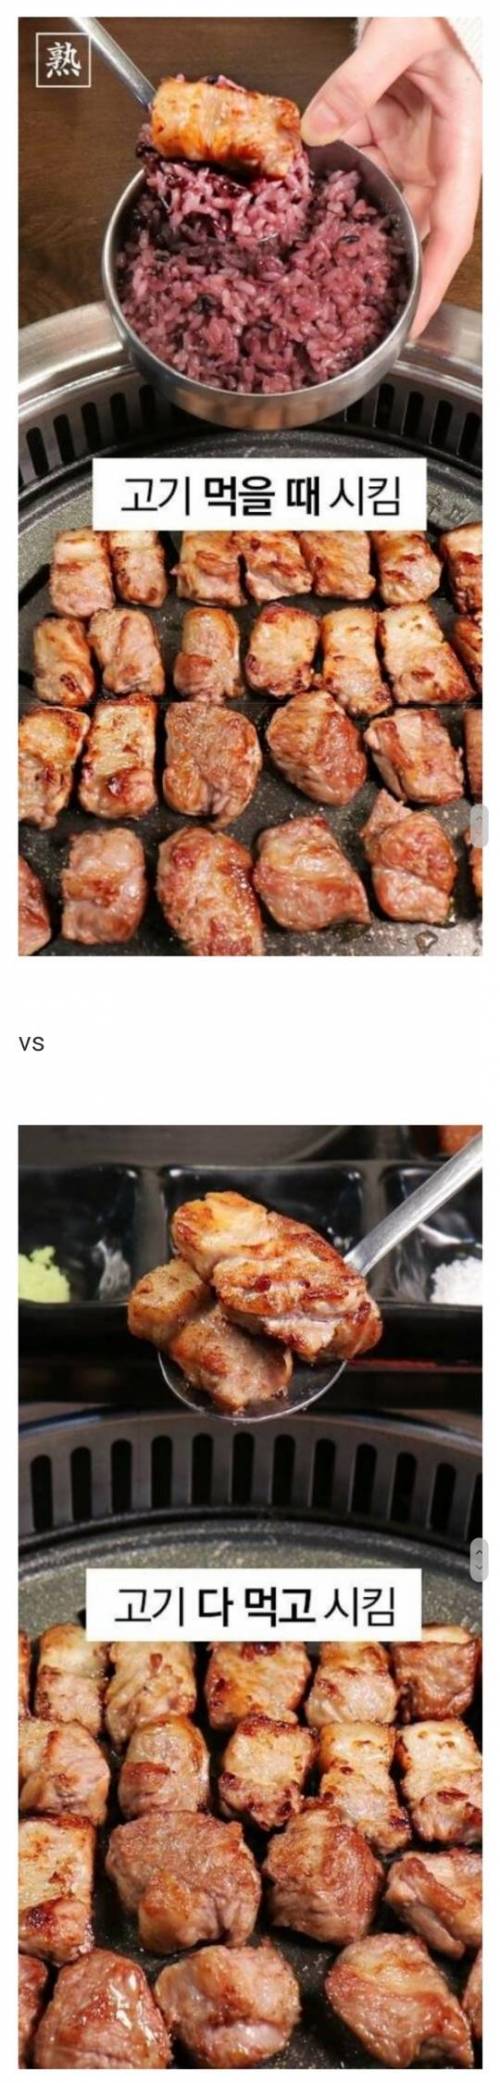 고기 먹을 때 밥 시키는 유형.jpg